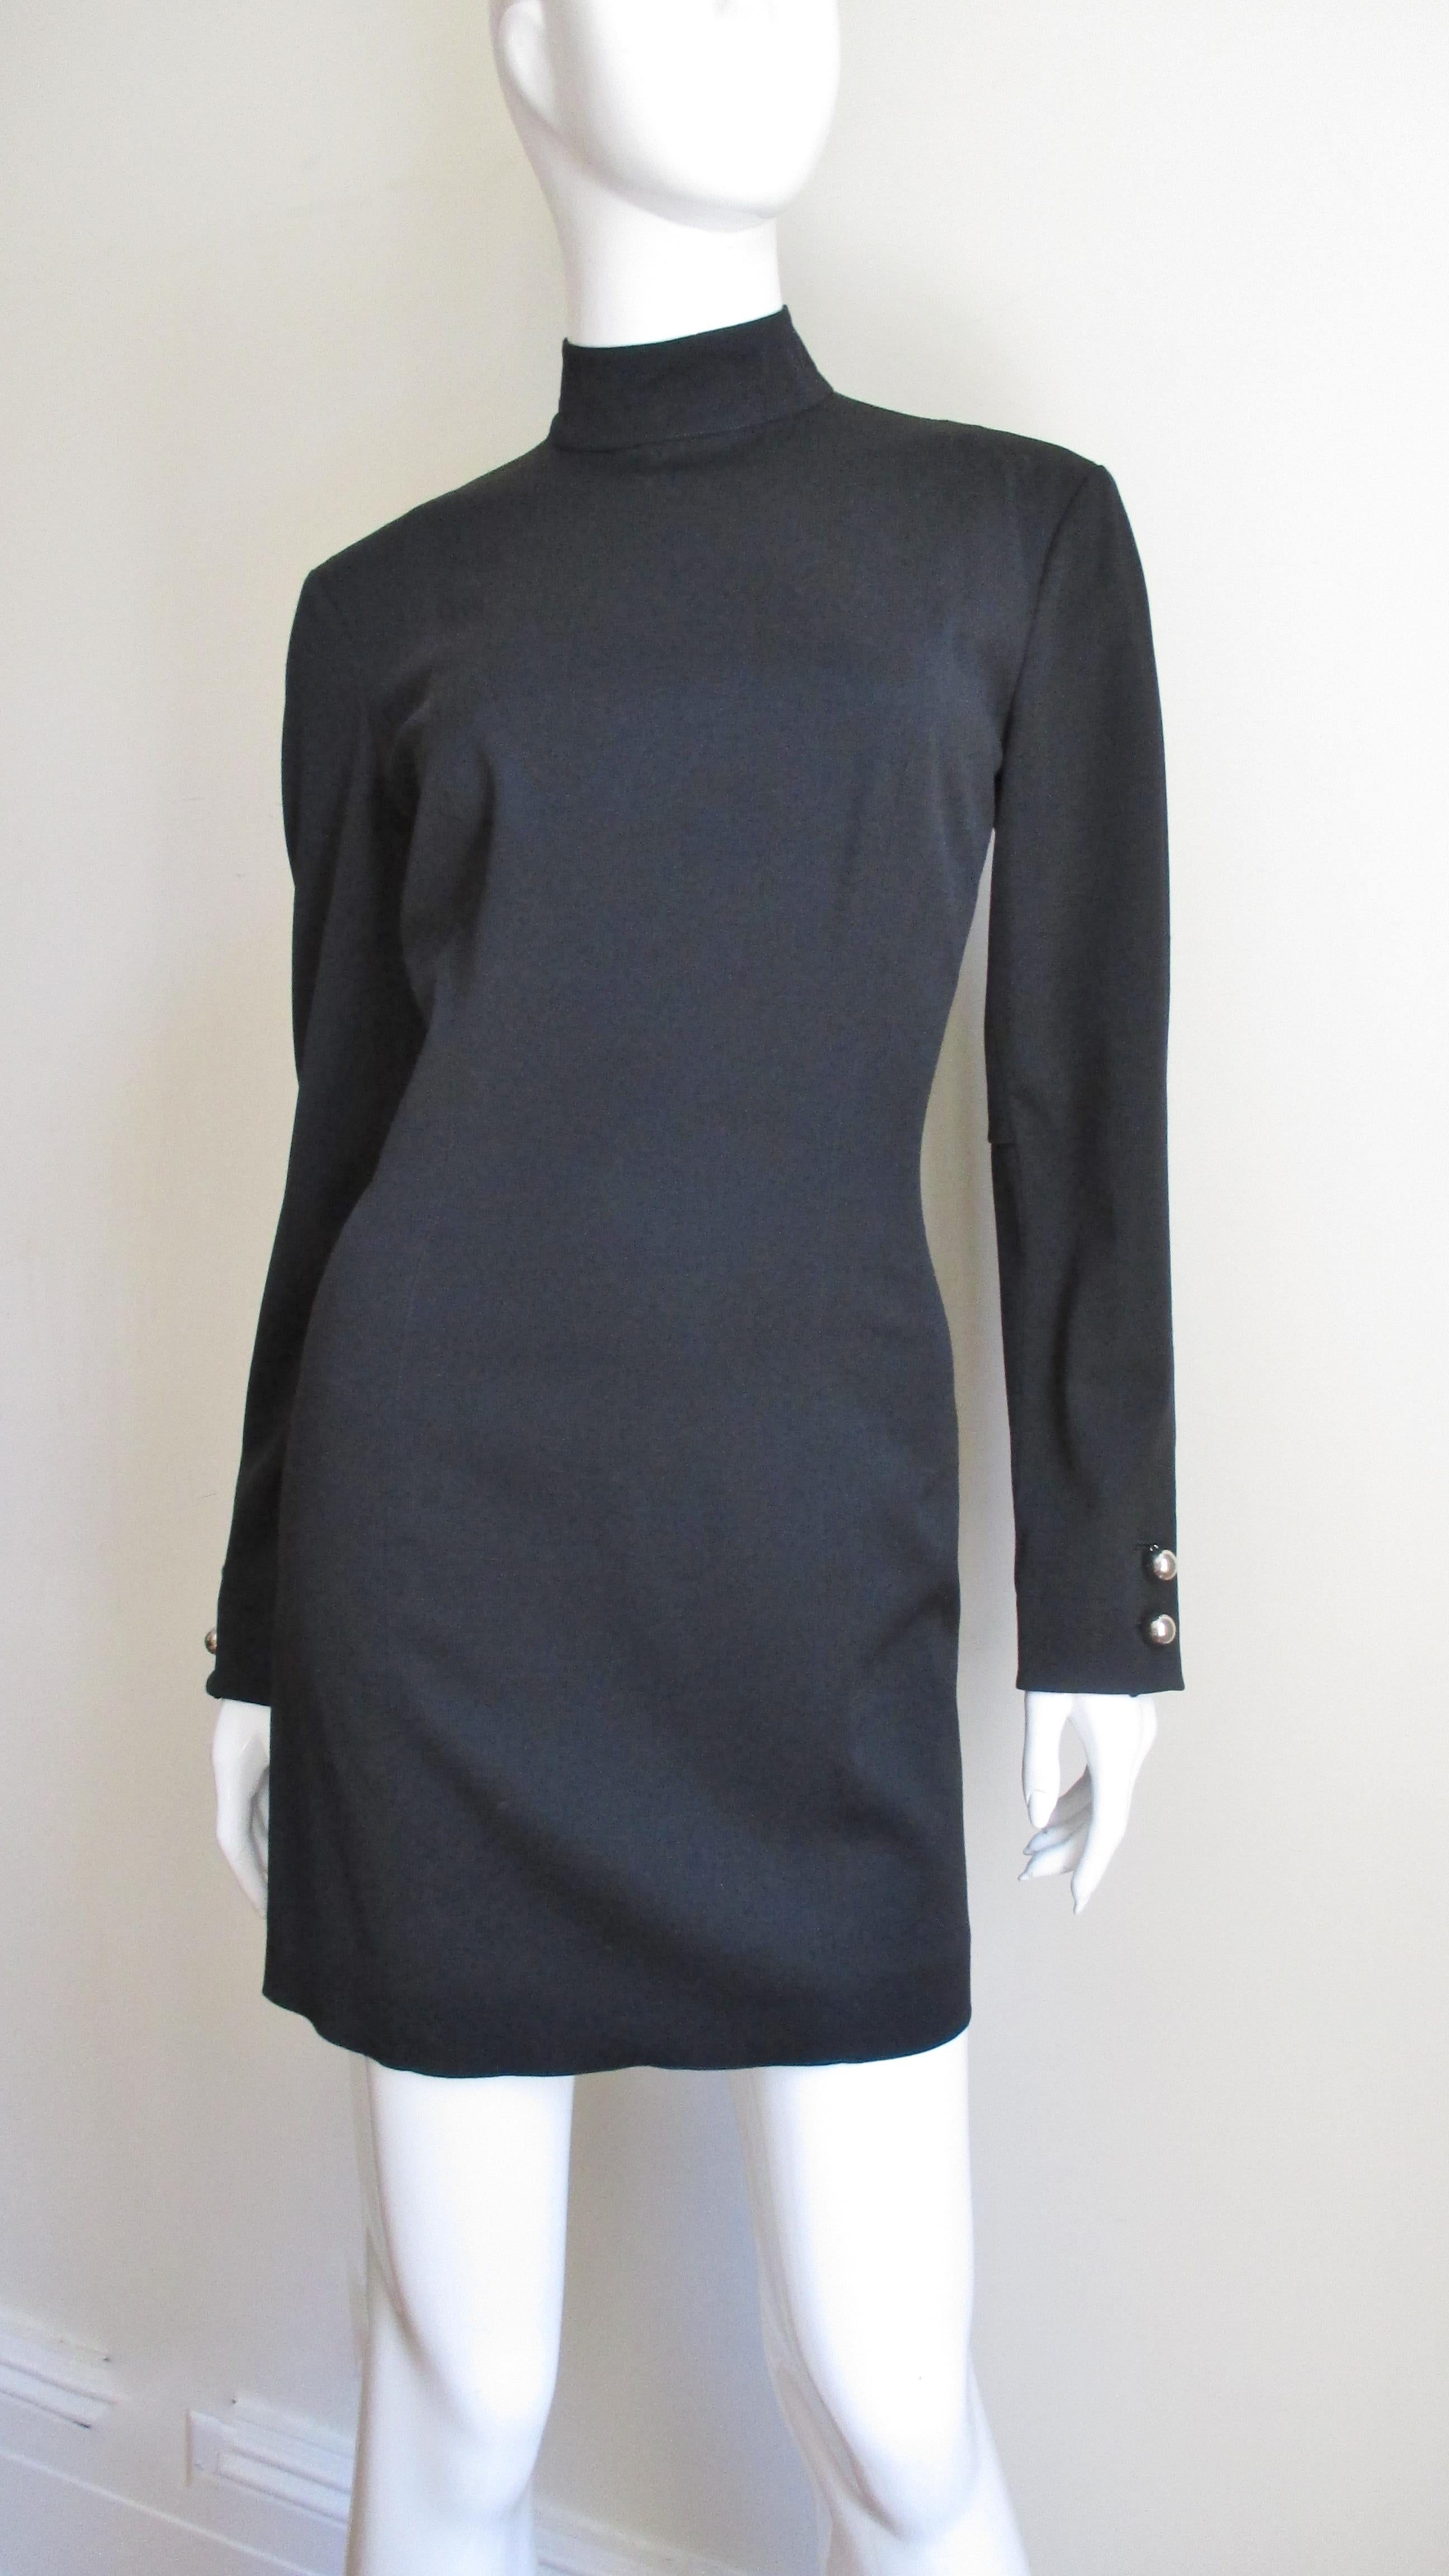 Une fabuleuse robe en laine noire légère (avec un peu de stretch) de Claude Montana.  Il présente des coutures princesse pour un ajustement parfait, un col montant et des poignets à boutons boule en métal argenté.  Il est non doublé, avec des